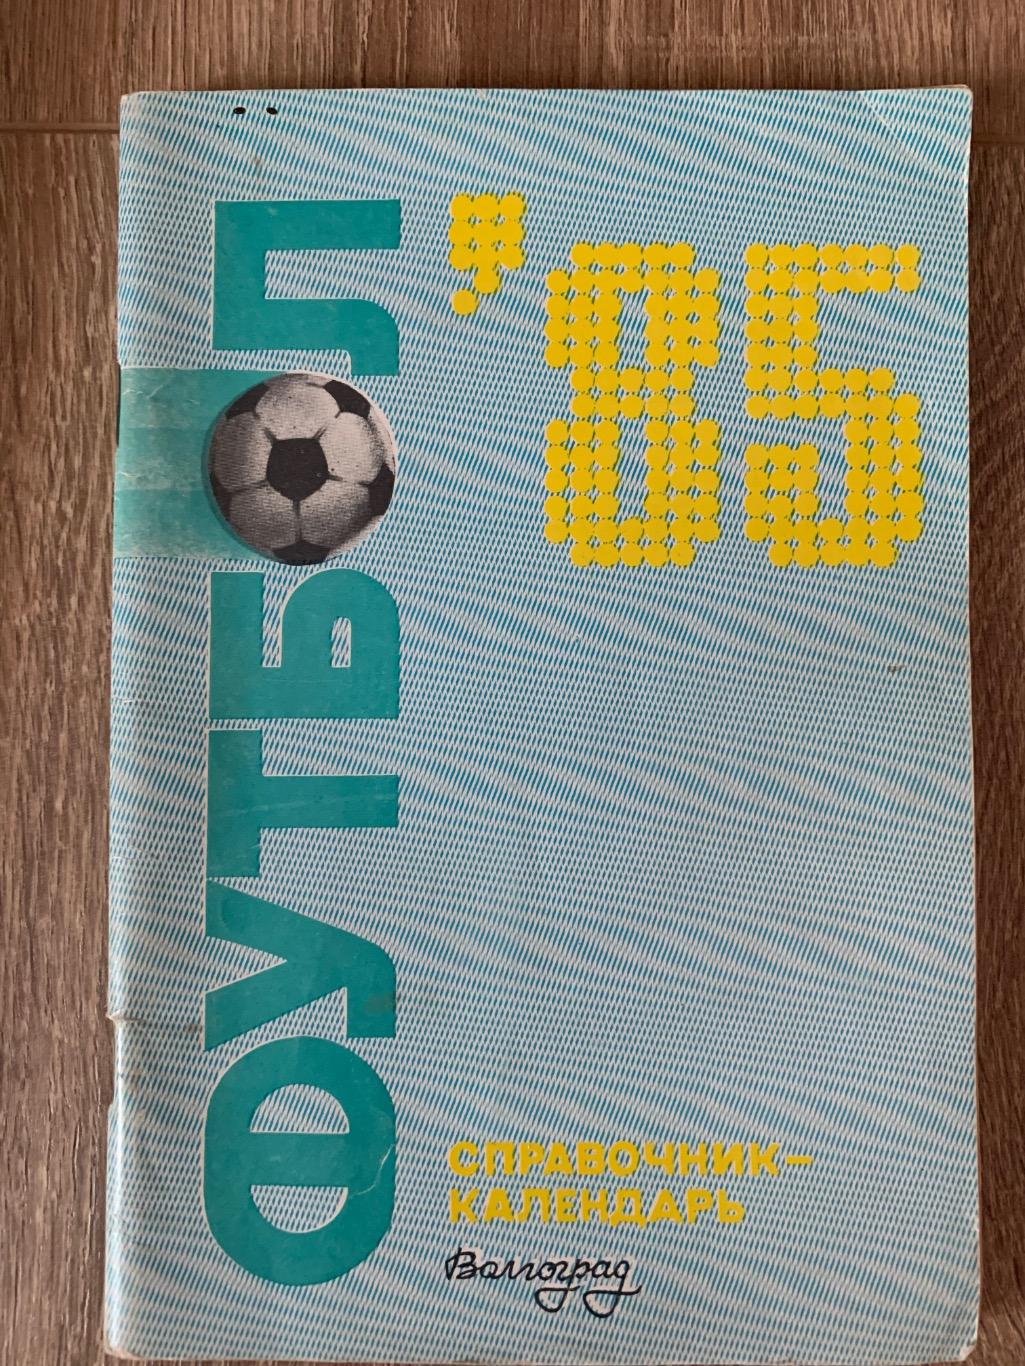 Календарь справочник Ротор Волгоград 1985